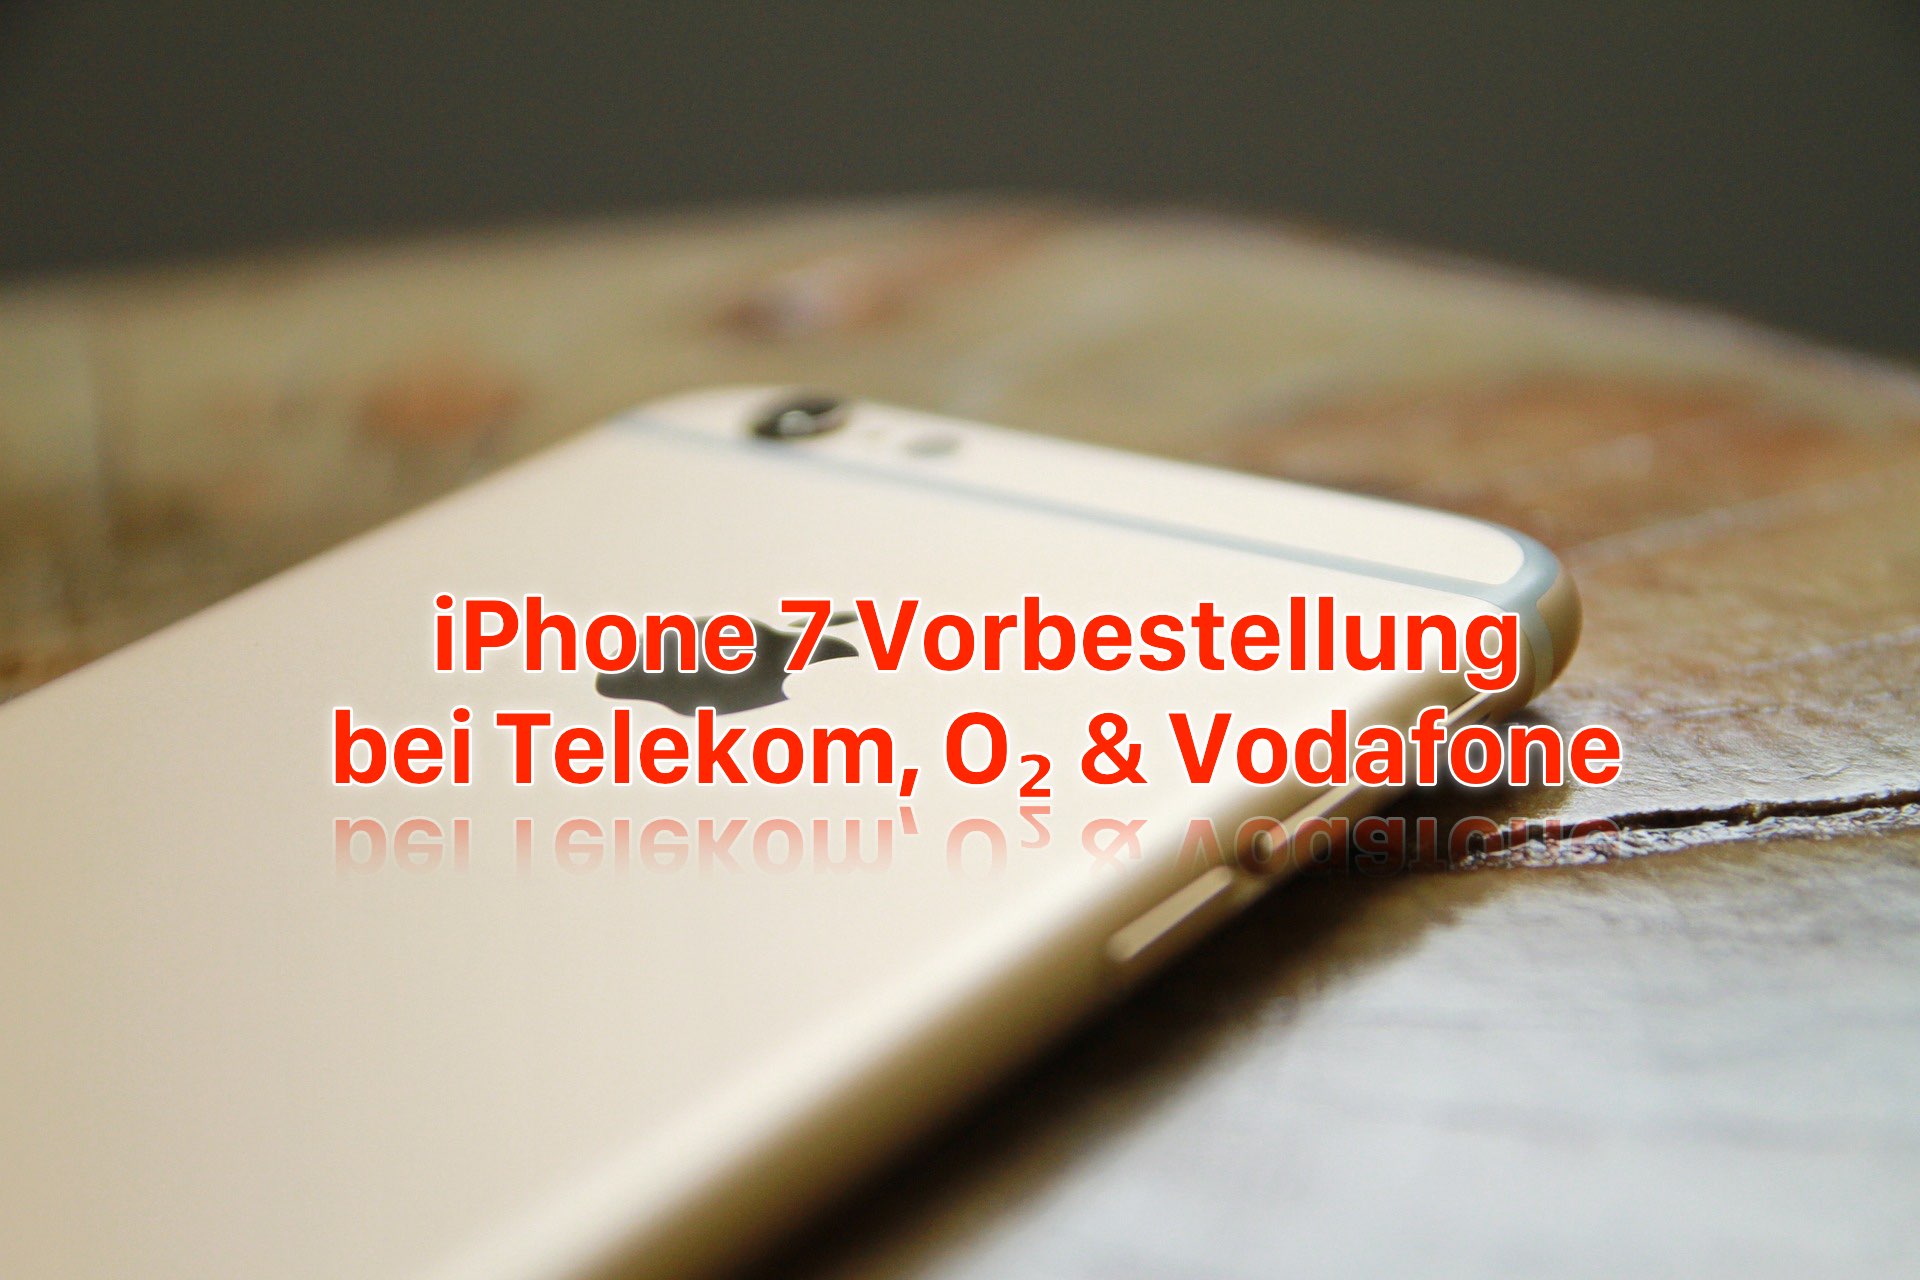 iPhone 7 Vorbestellung: bei Telekom, O2 und Vodafone iPhone 7 reservieren! 12